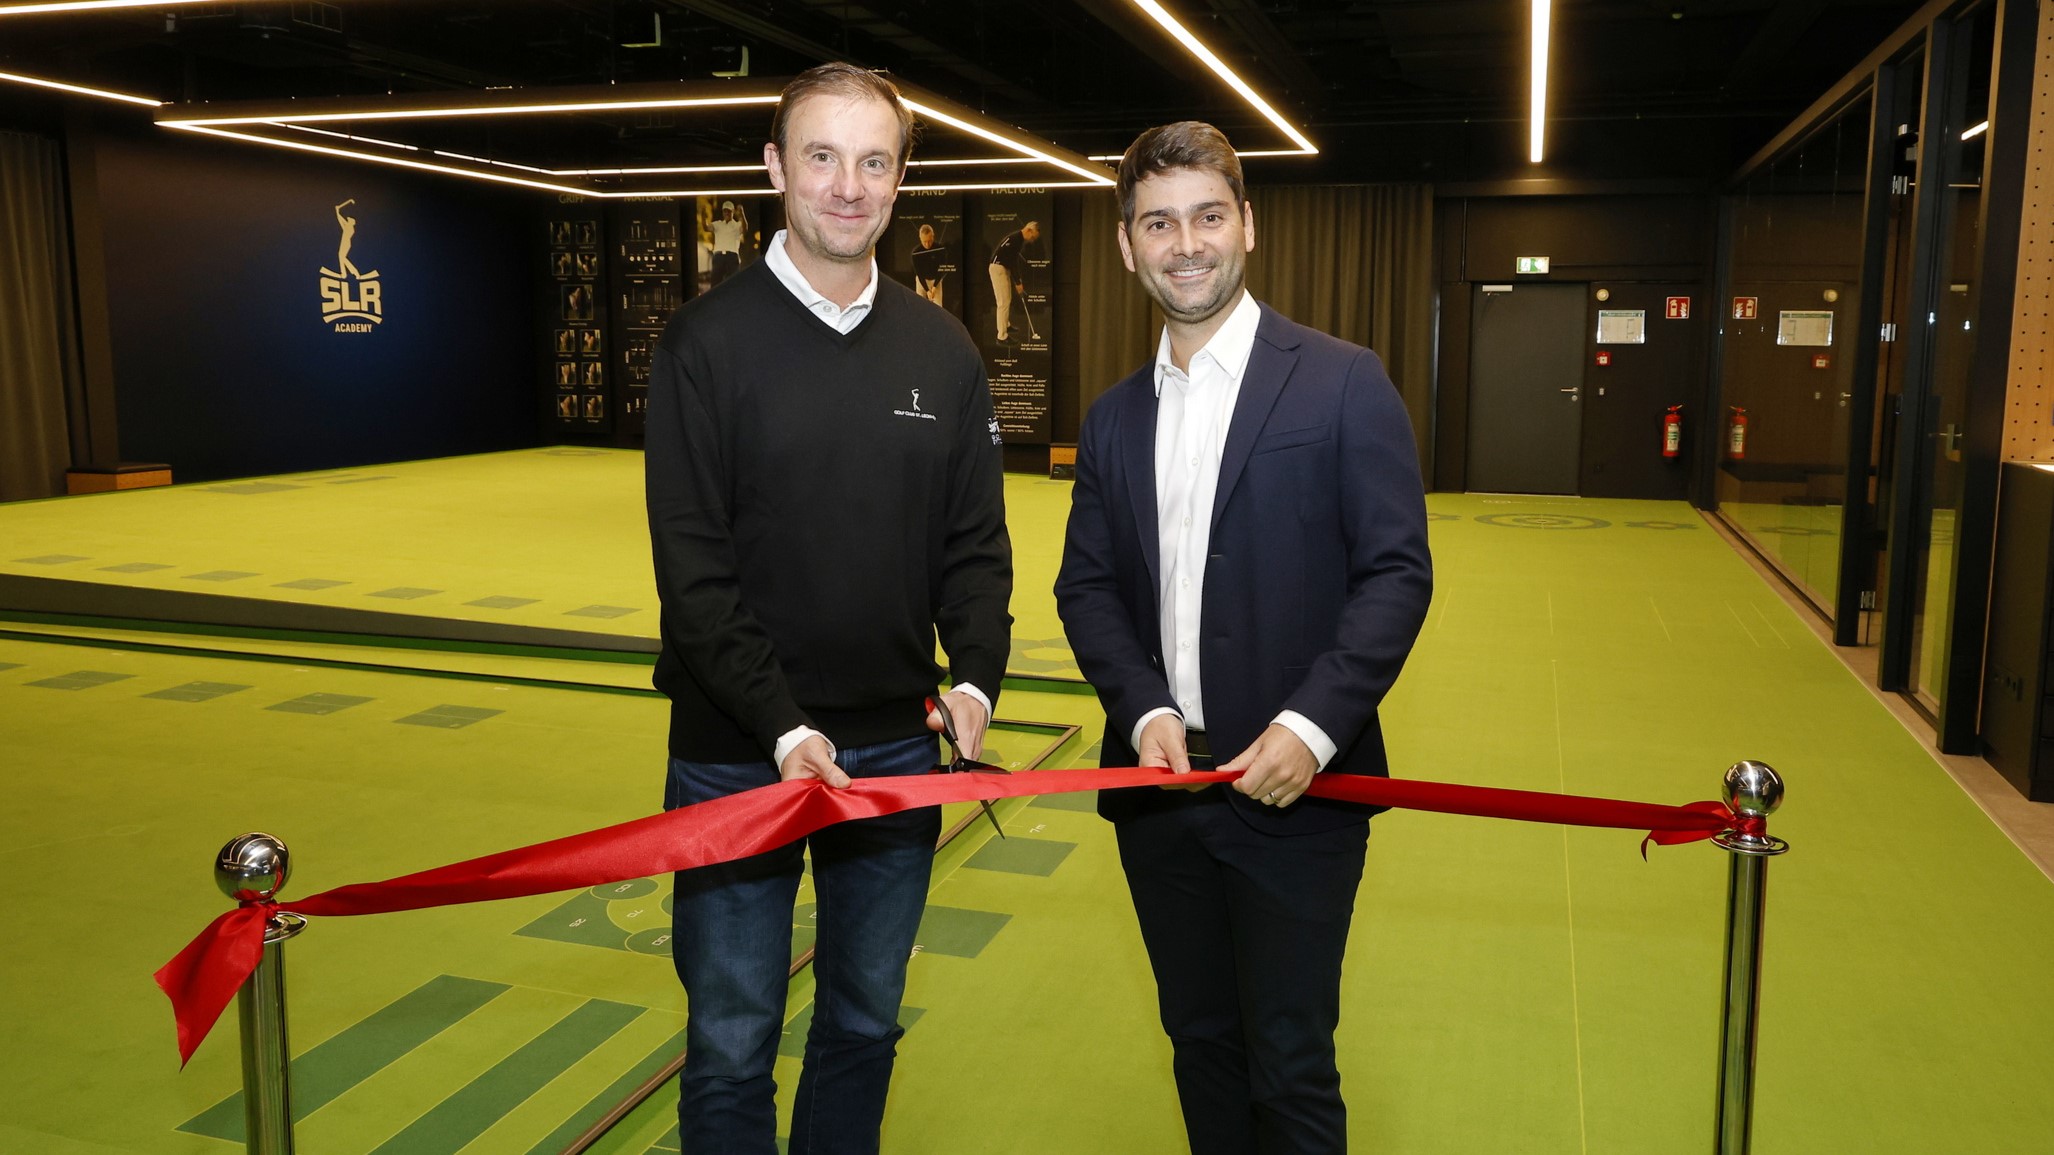 Neueröffnung des Putt Analyse & Performance Centers mit SLR-Präsident Daniel Hopp (l.) und Clubmanager Moritz Lampert